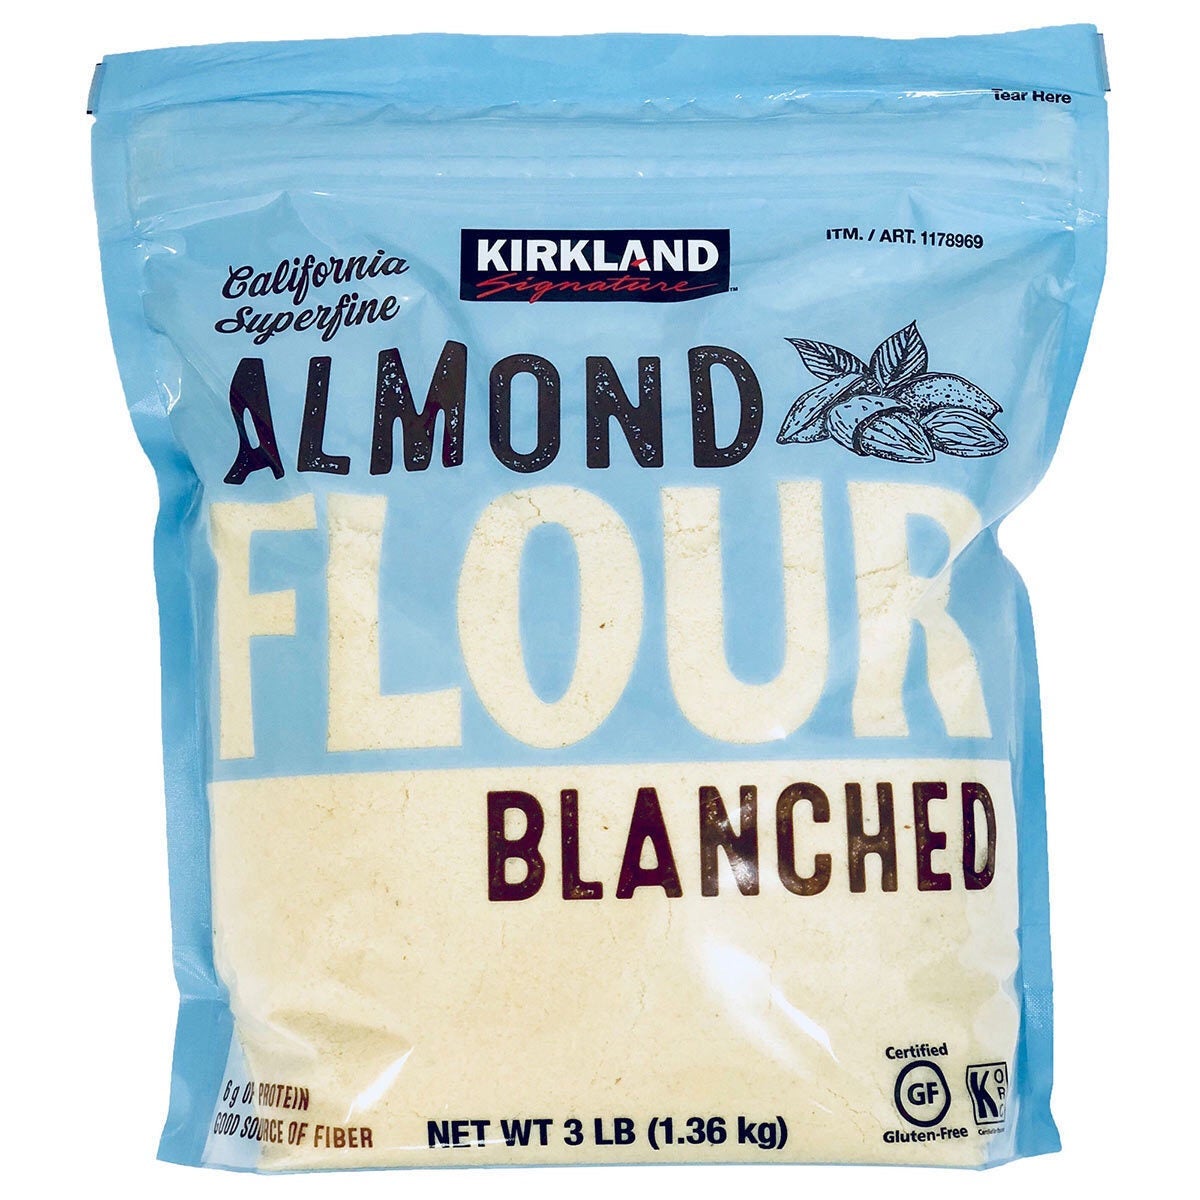 Kirkland Signature Almond Flour Blanched 1.36kg